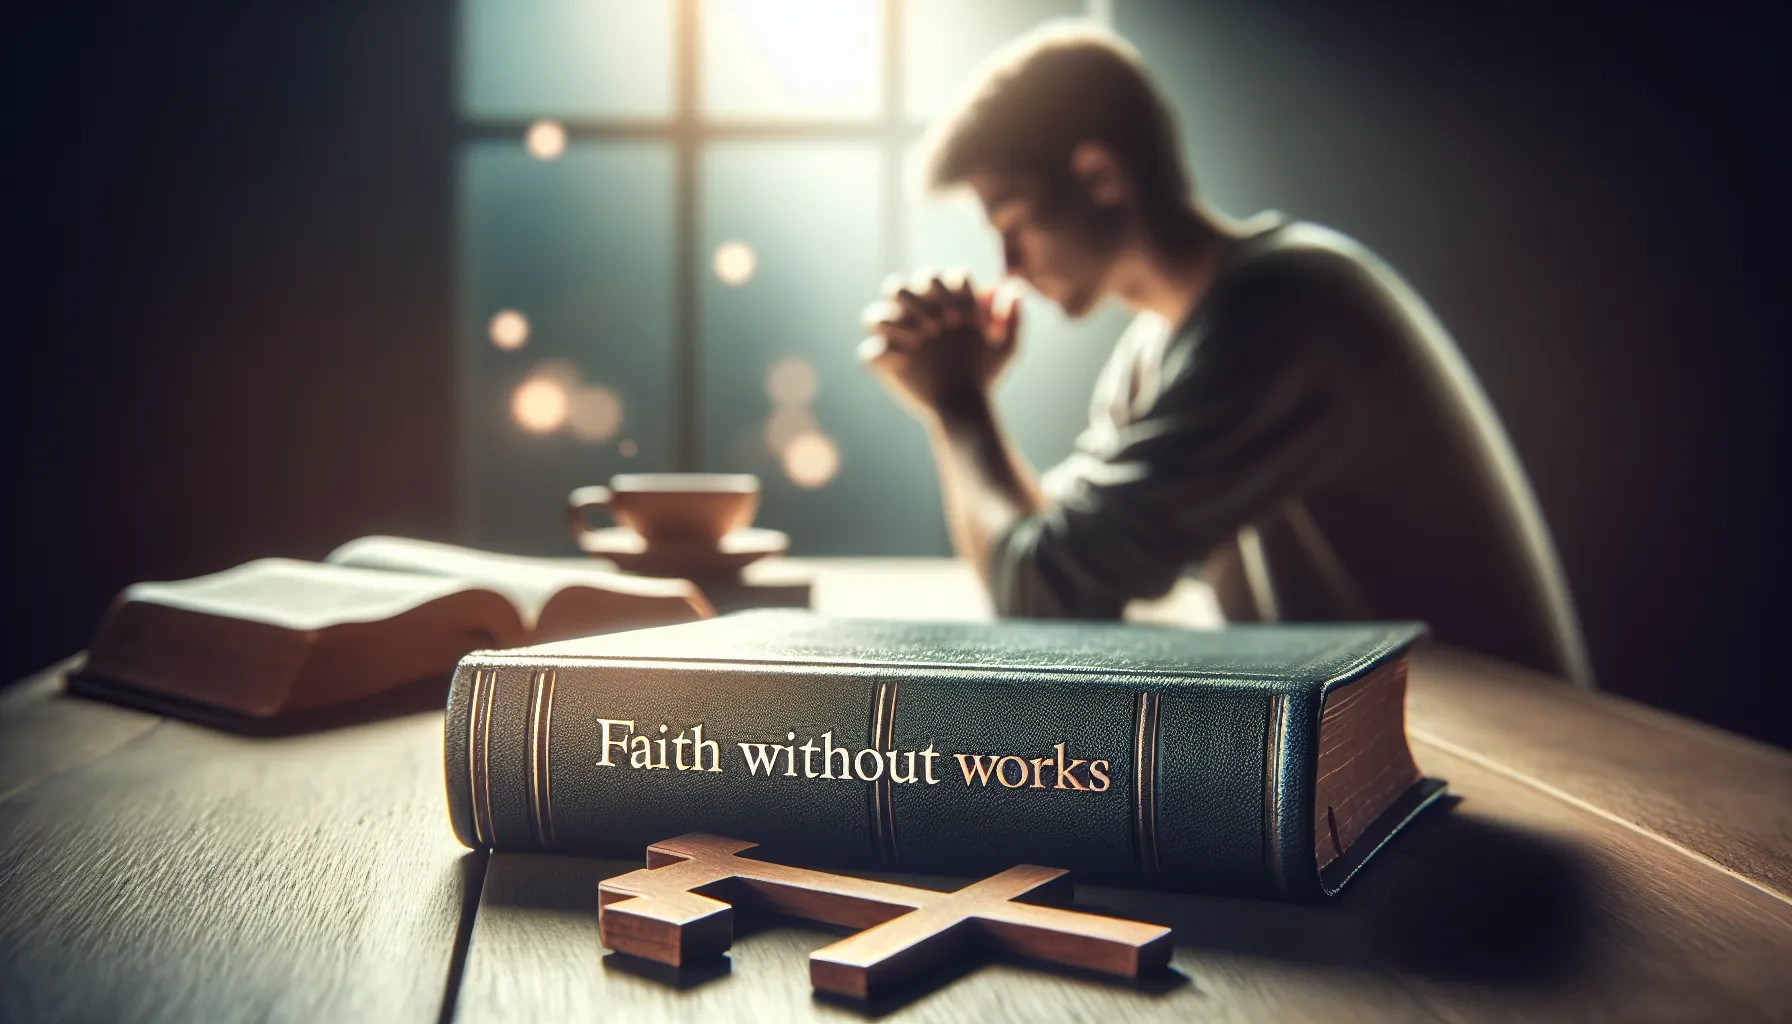 Concepto religioso de la fe sin obras ilustrado con una imagen de la Biblia abierta y una persona reflexionando.